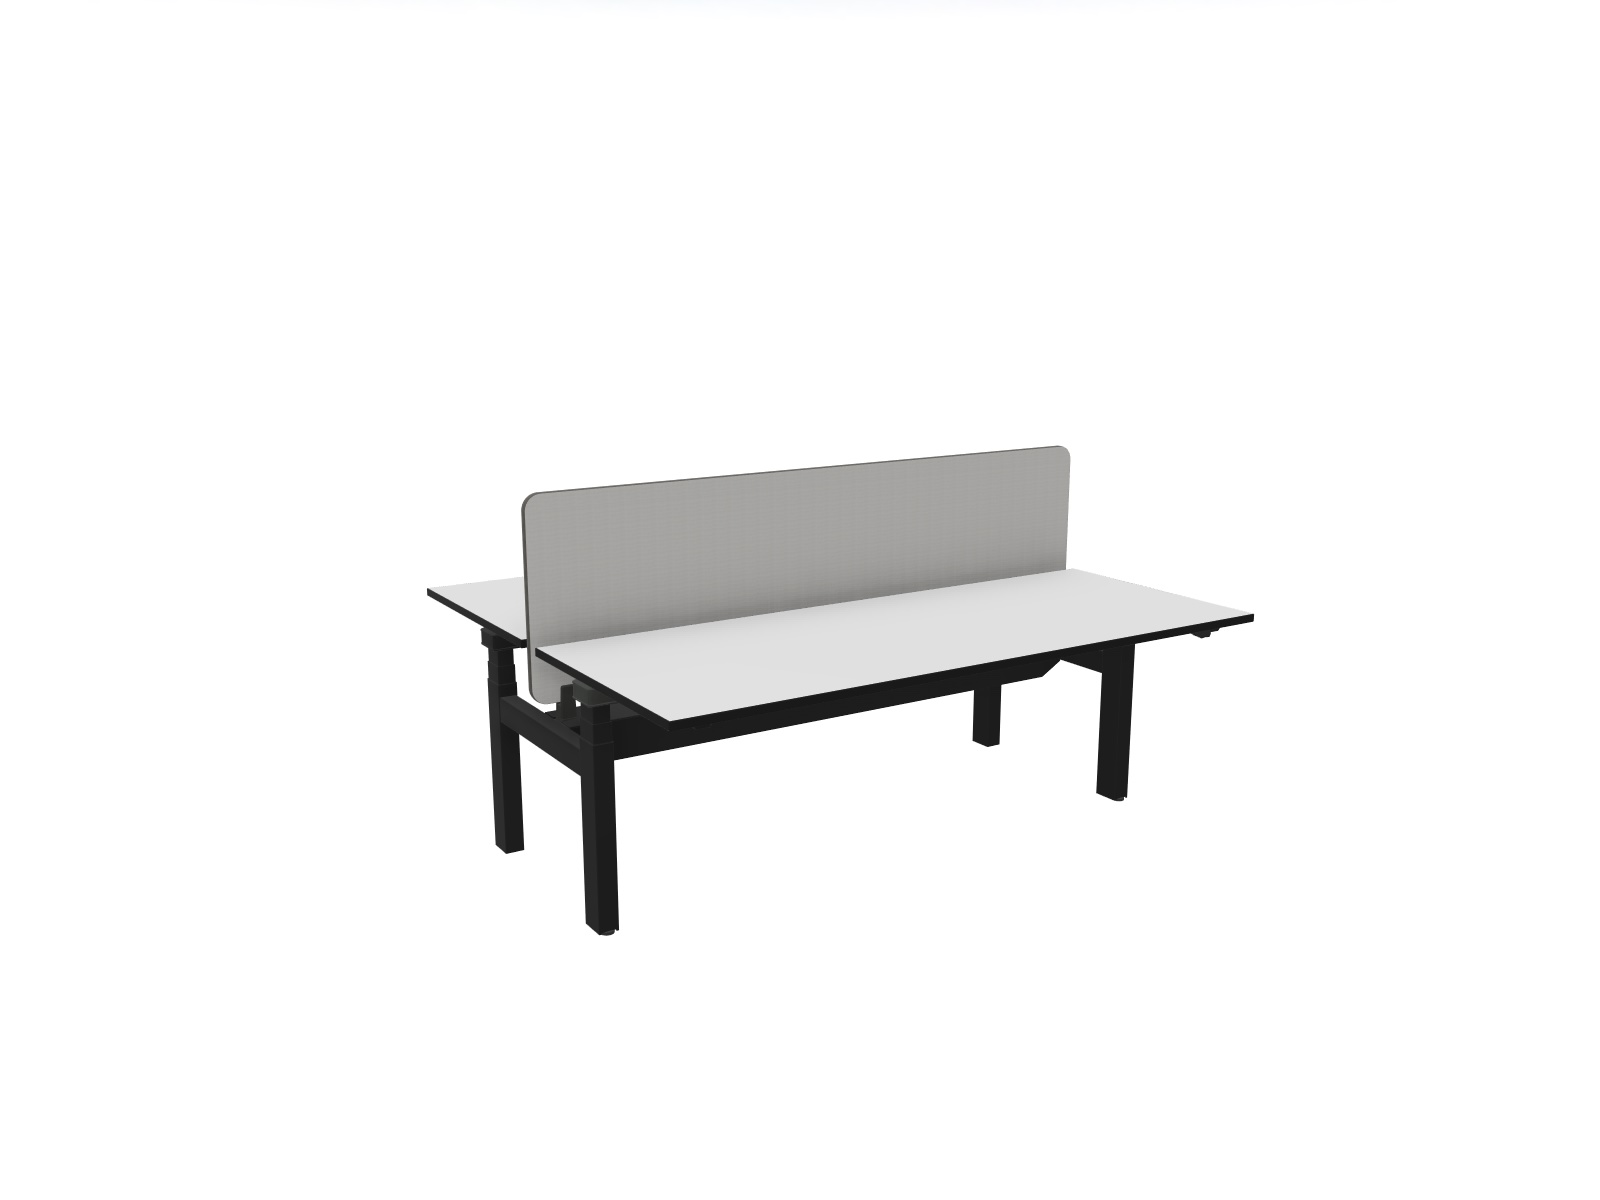 LHL Onlineshop - Abverkaufsmöbel - Steelcase Ology Bench